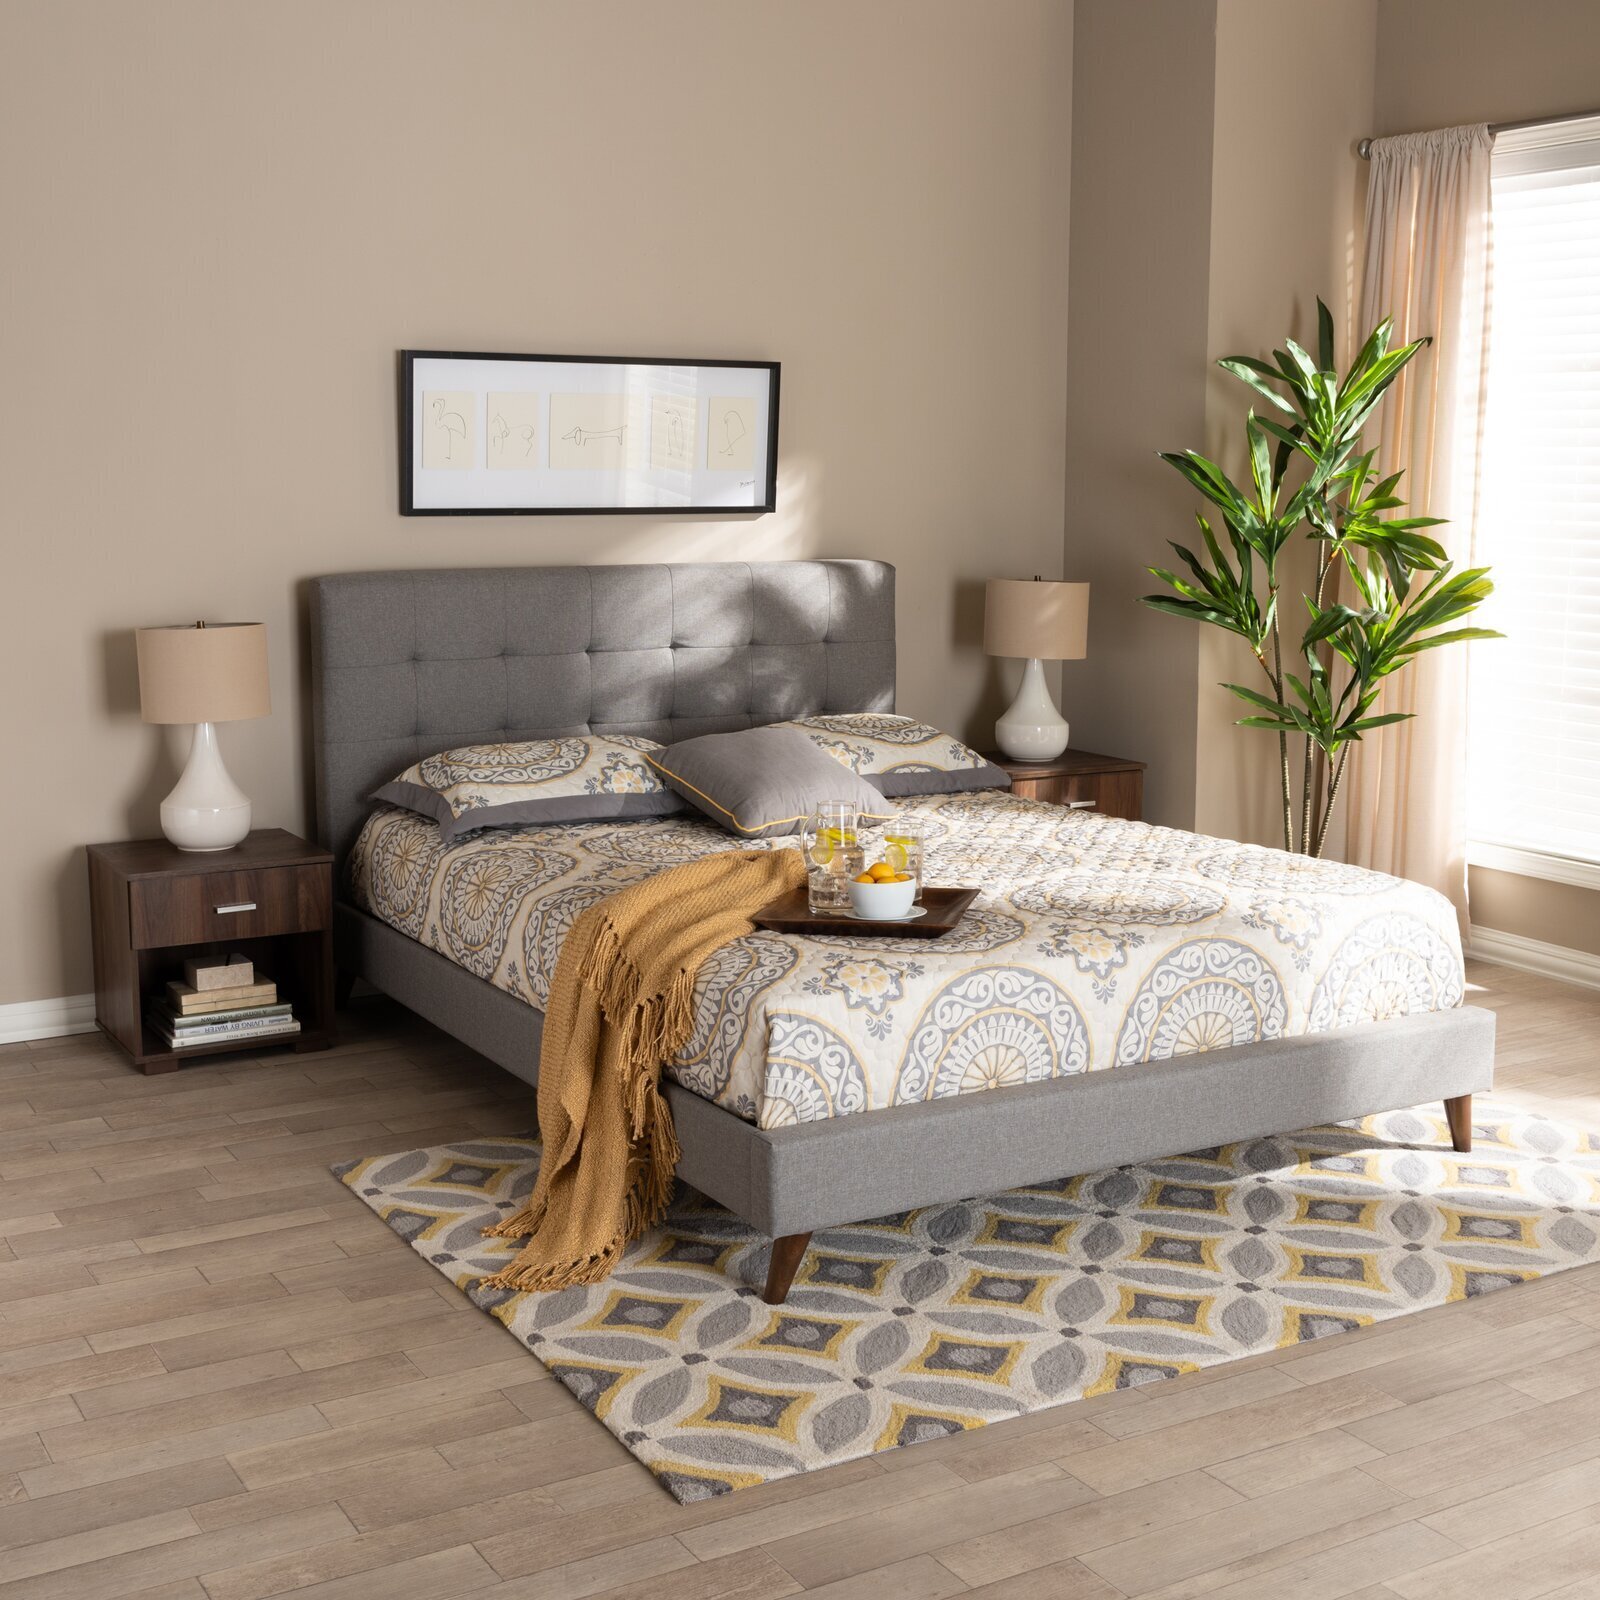 Tufted Gray Bedroom Furniture Set